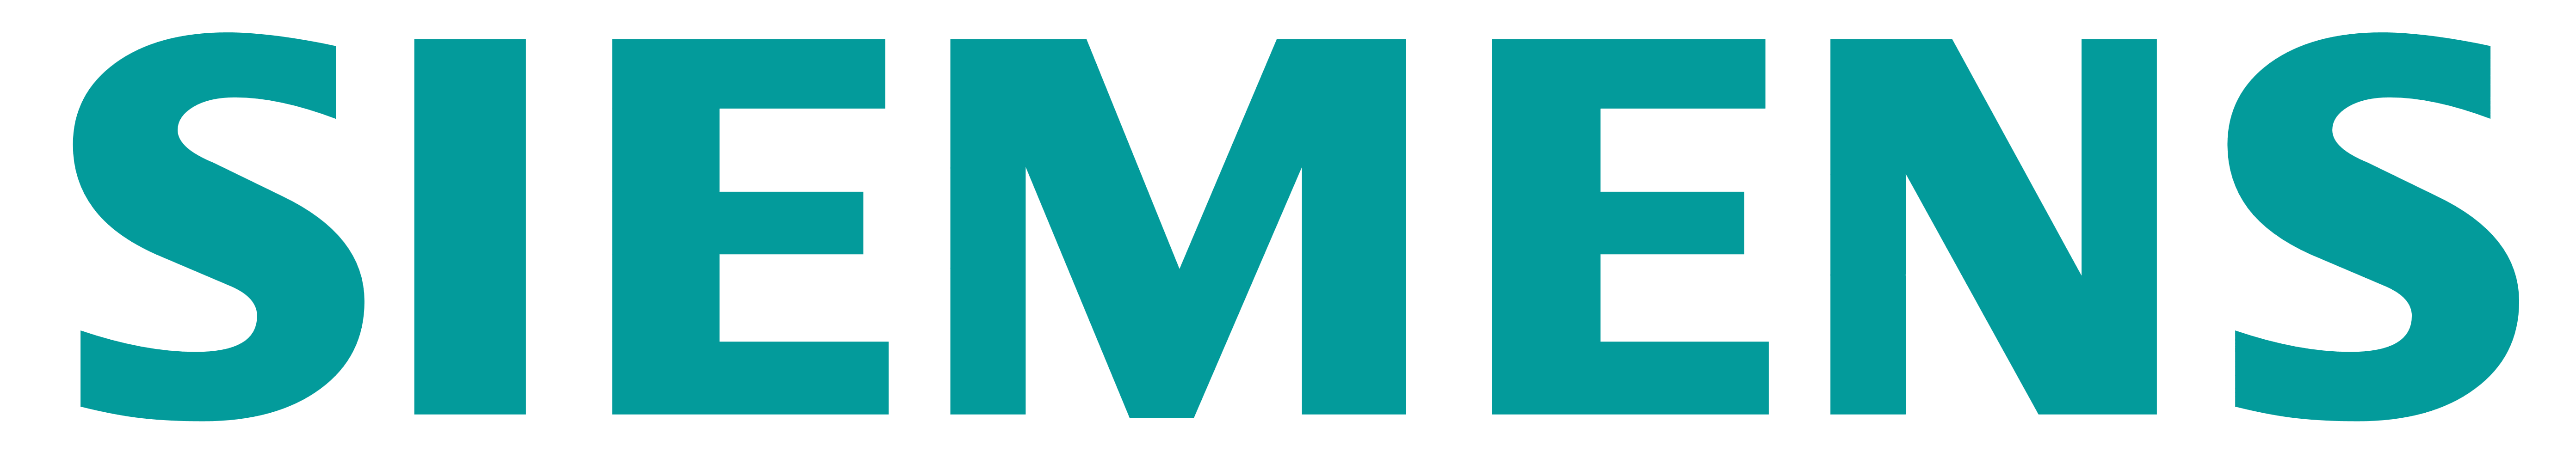 Siemens Logo PNG - 180182